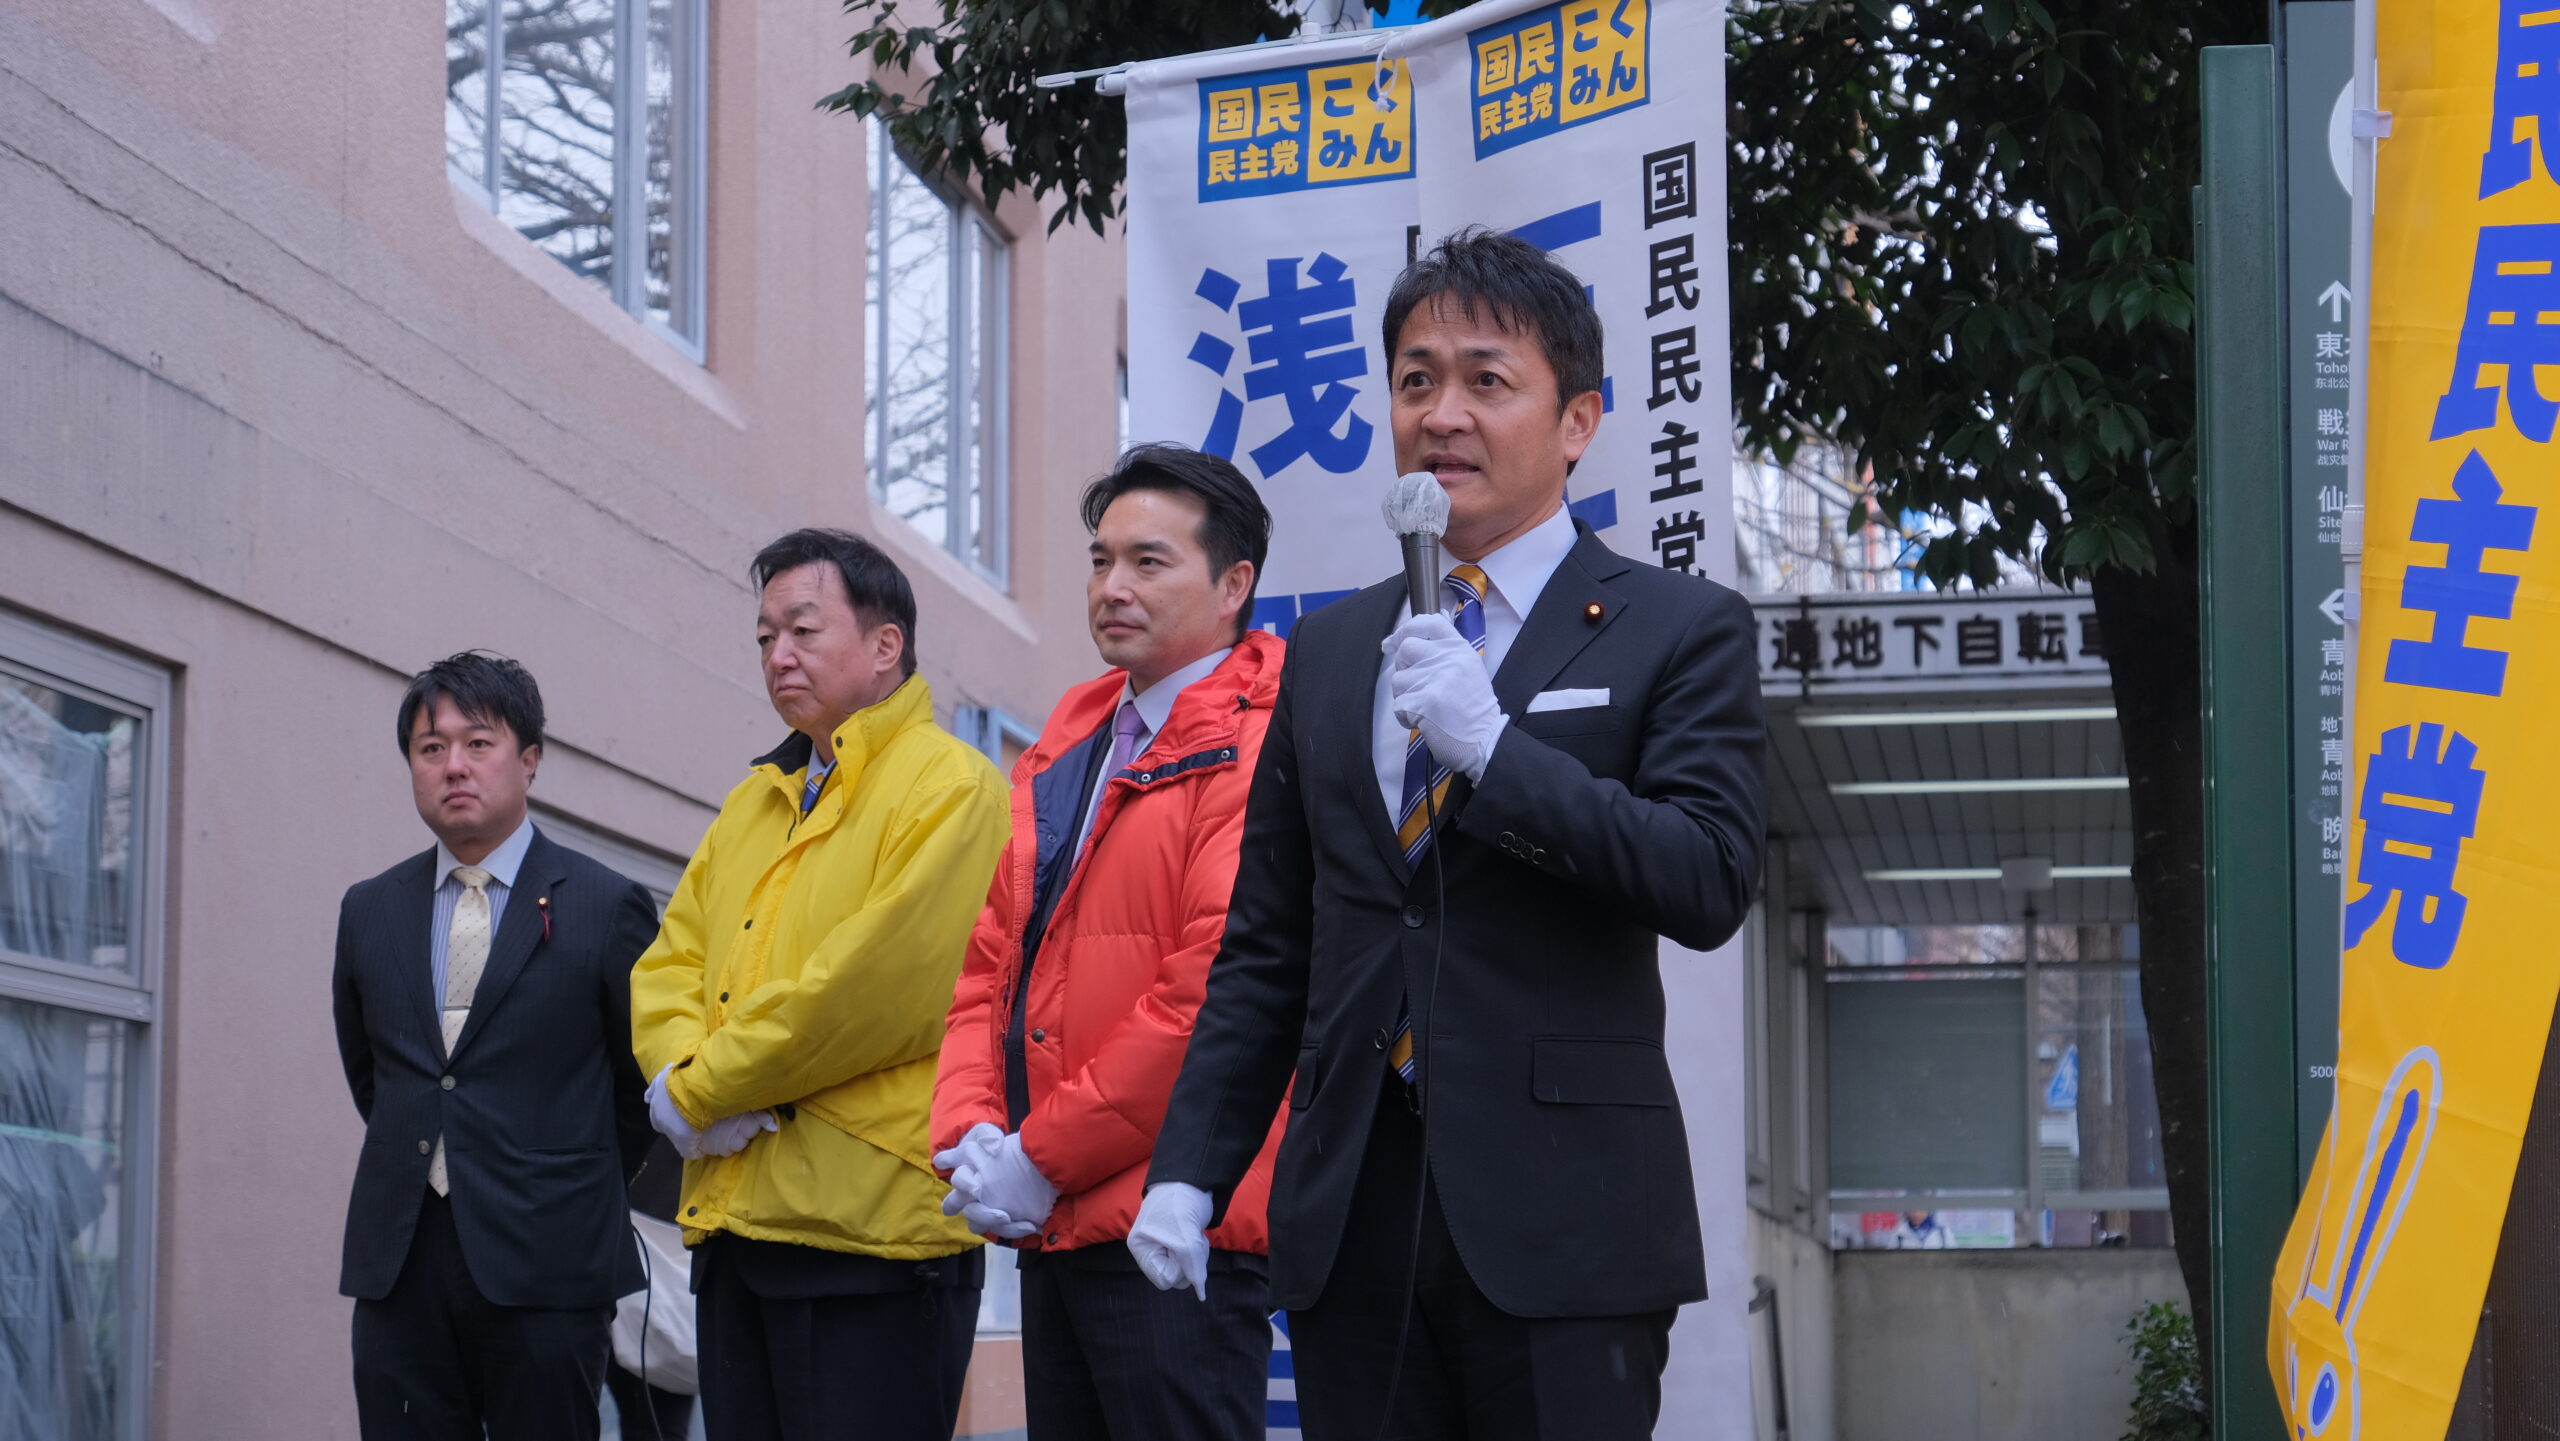 【宮城】「正直な政治を貫き、給料が上がる経済を実現」玉木代表が仙台市内で街頭演説